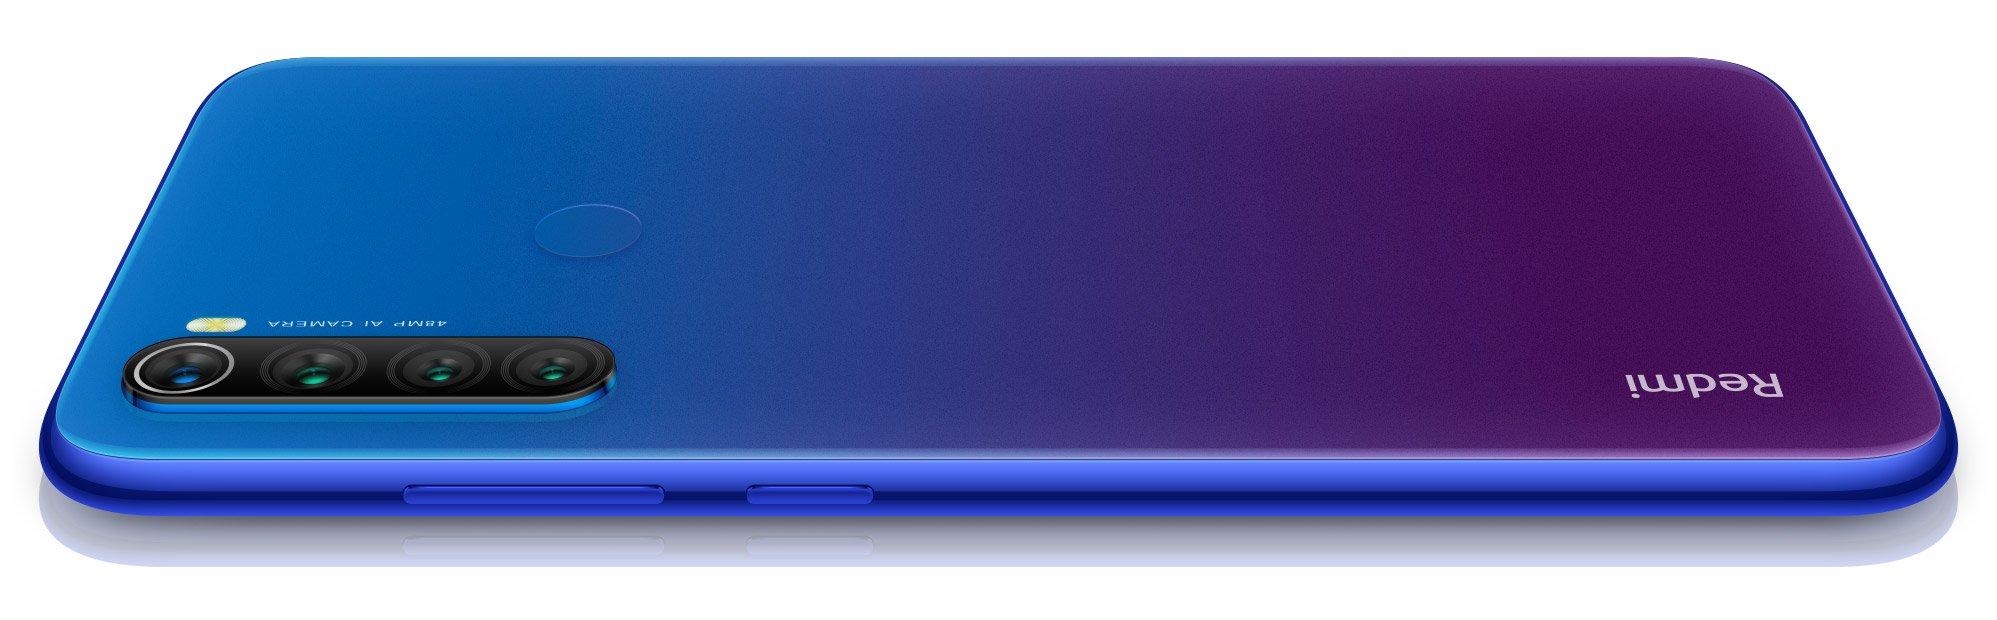 Xiaomi Redmi 6 Blue 64gb Global